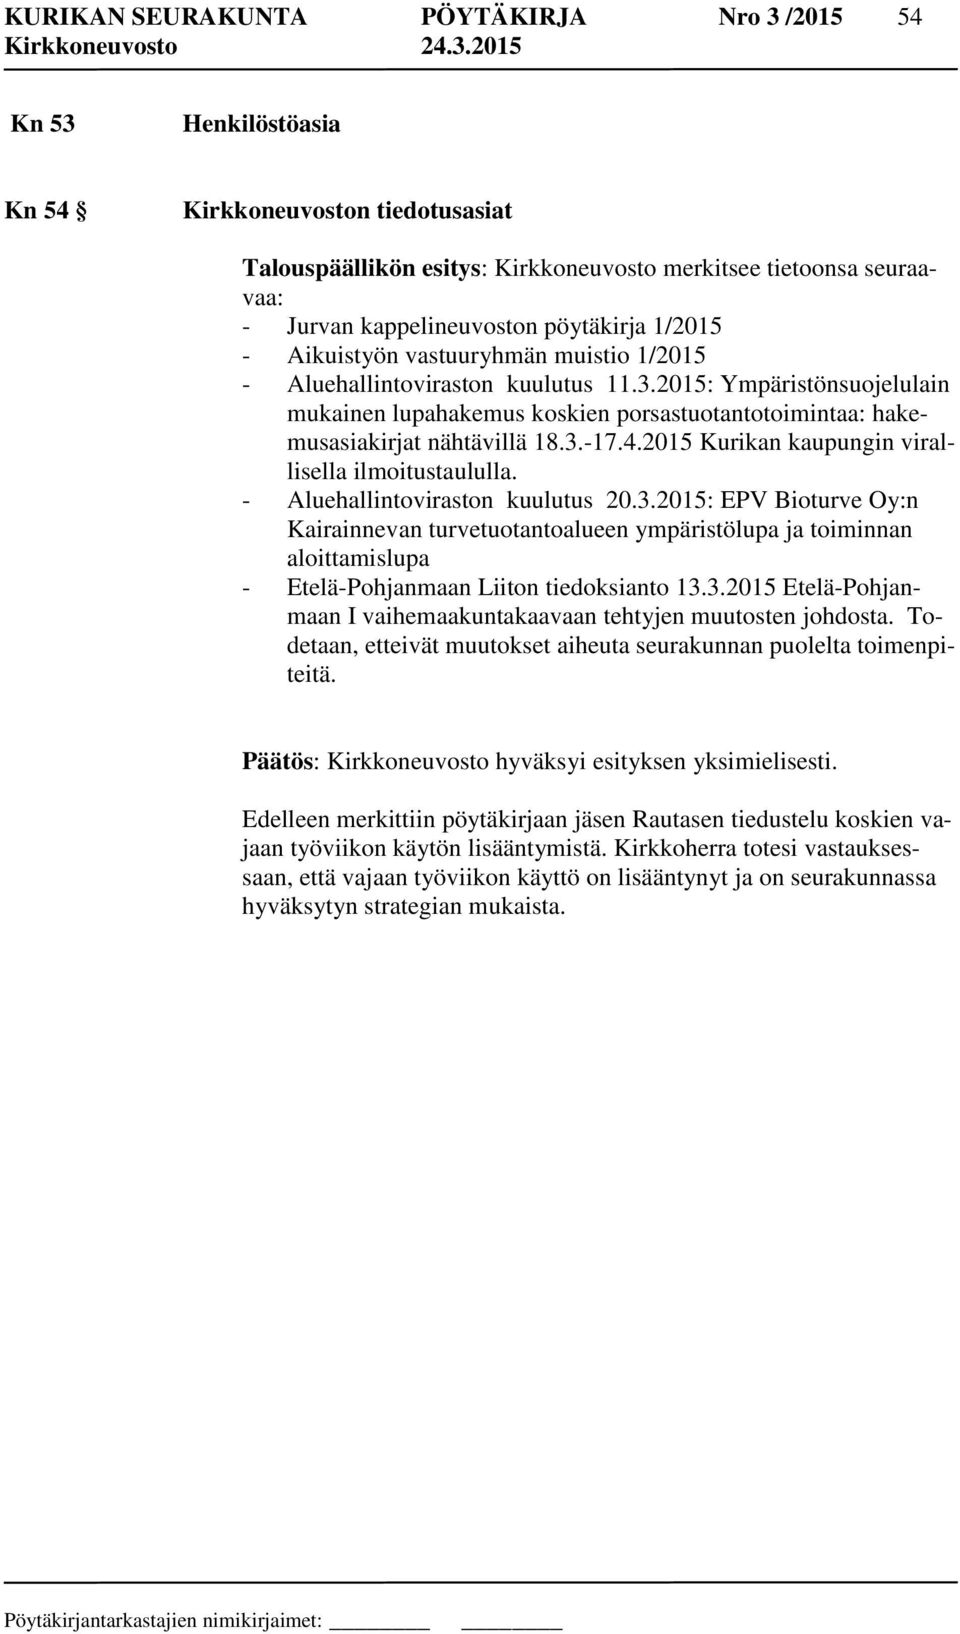 2015: Ympäristönsuojelulain mukainen lupahakemus koskien porsastuotantotoimintaa: hakemusasiakirjat nähtävillä 18.3.-17.4.2015 Kurikan kaupungin virallisella ilmoitustaululla.